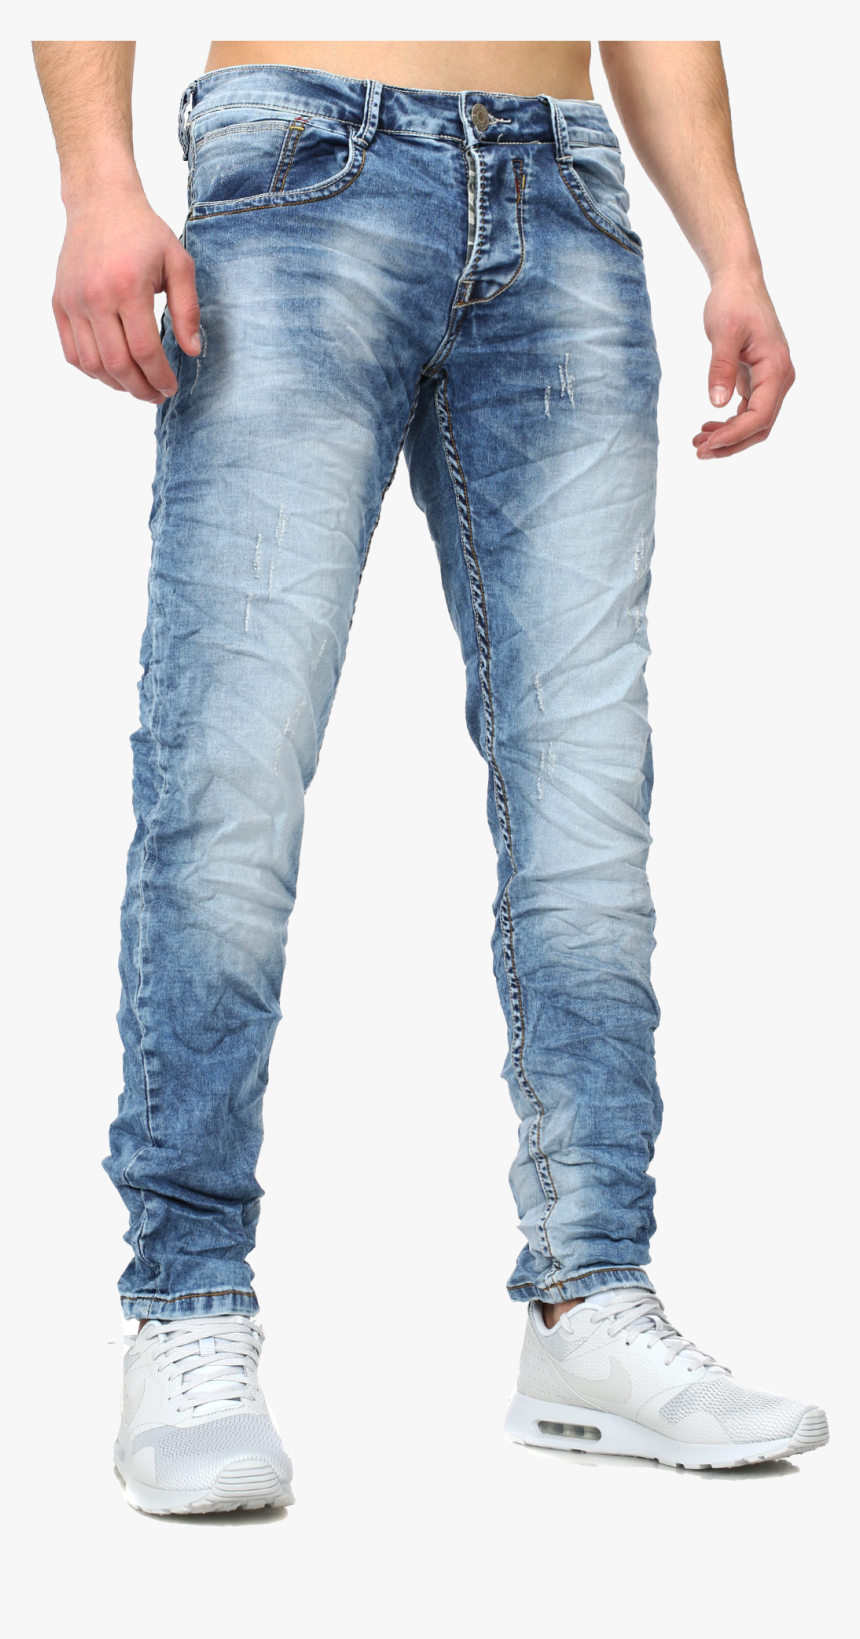 Jeans For Men Png, Transparent Png - kindpng